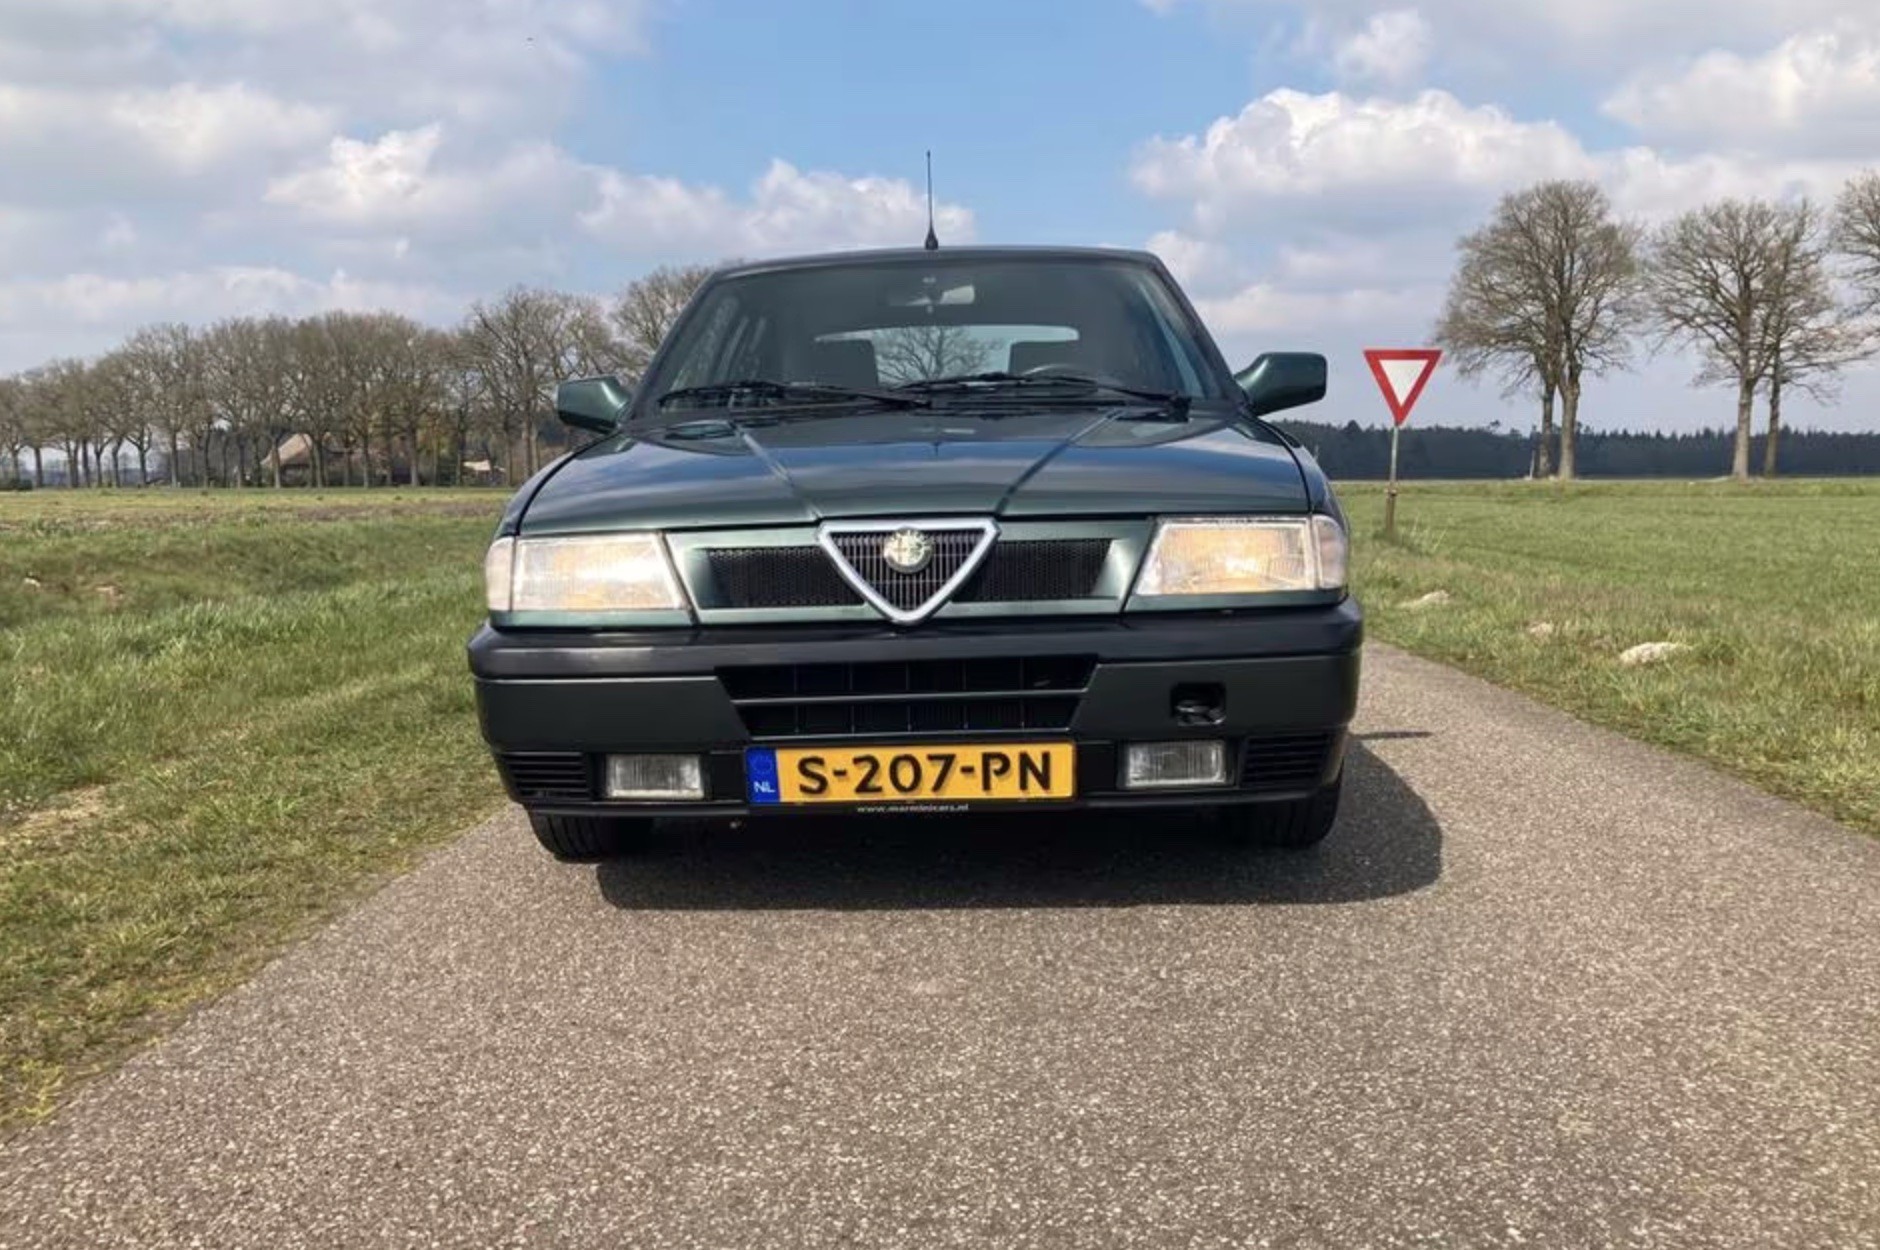 Niet modieus Duplicaat ondernemer Jouw perfecte eerste auto staat gewoon te koop - Autoblog.nl